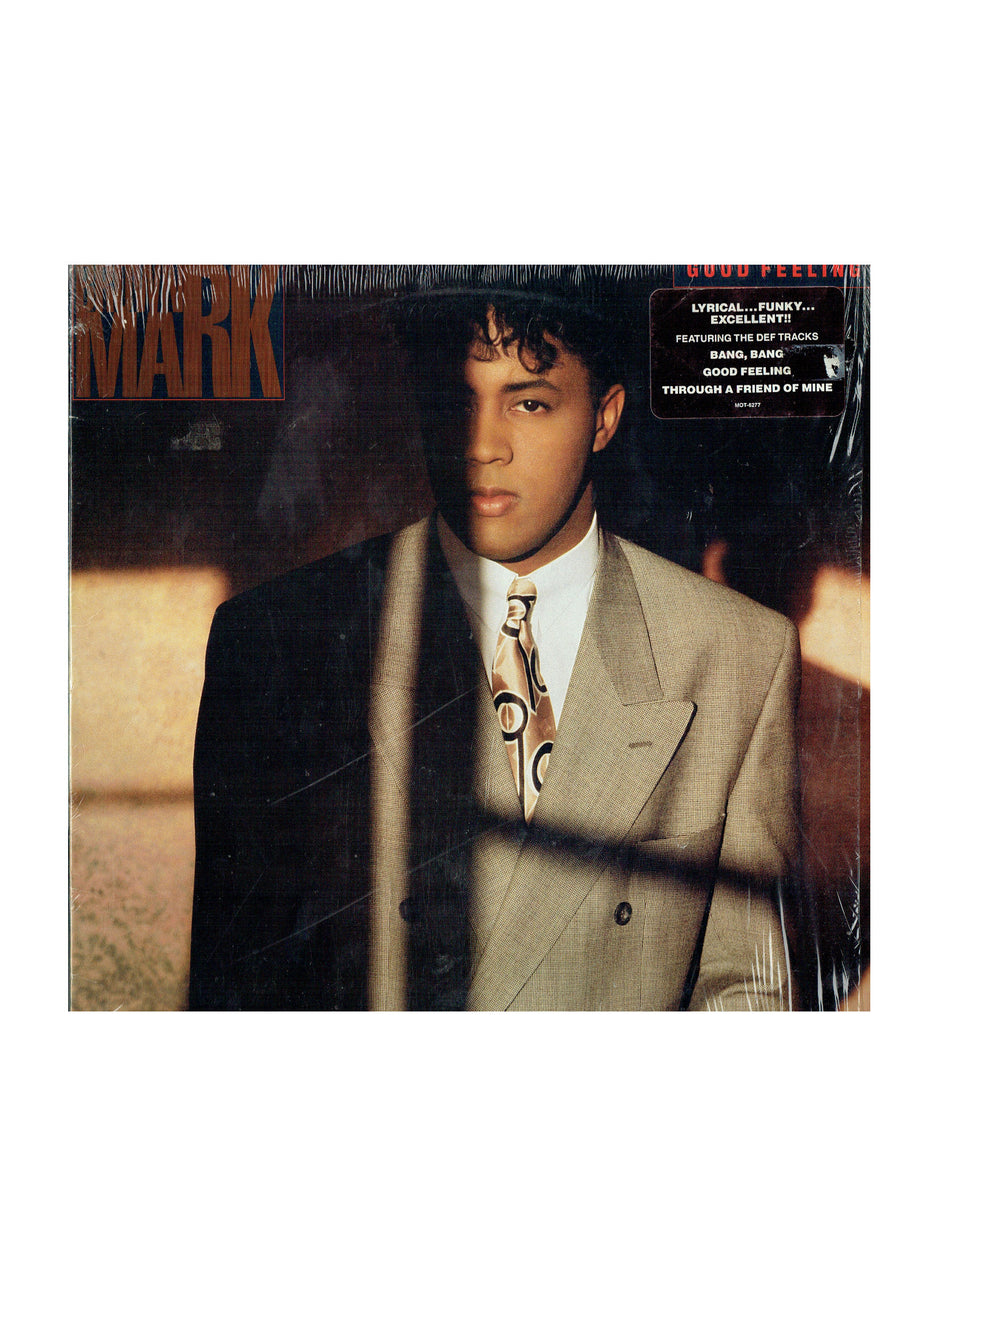 Prince – Brownmark Good Feeling Vinyl Album US Preloved: 1989